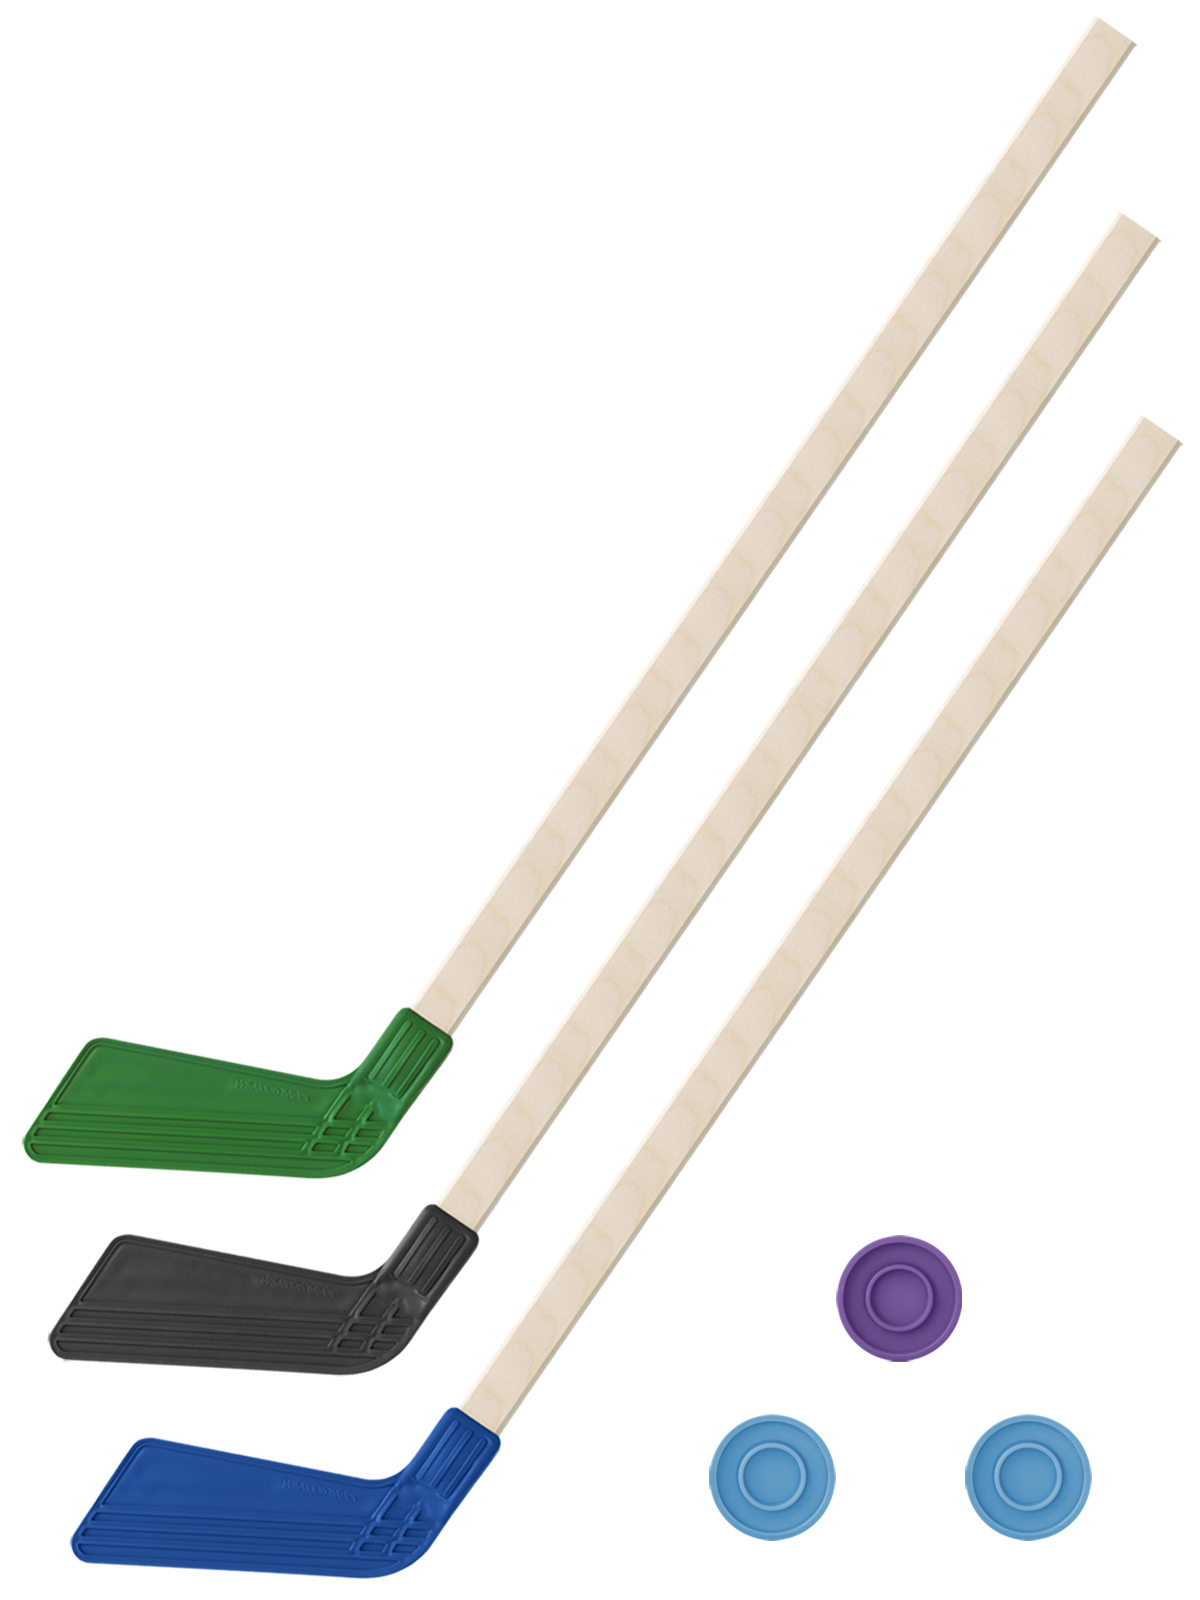 фото Хоккейный набор 3 в1 задира-плюс клюшки 80 см зеленая, черная, синяя + 3 шайбы